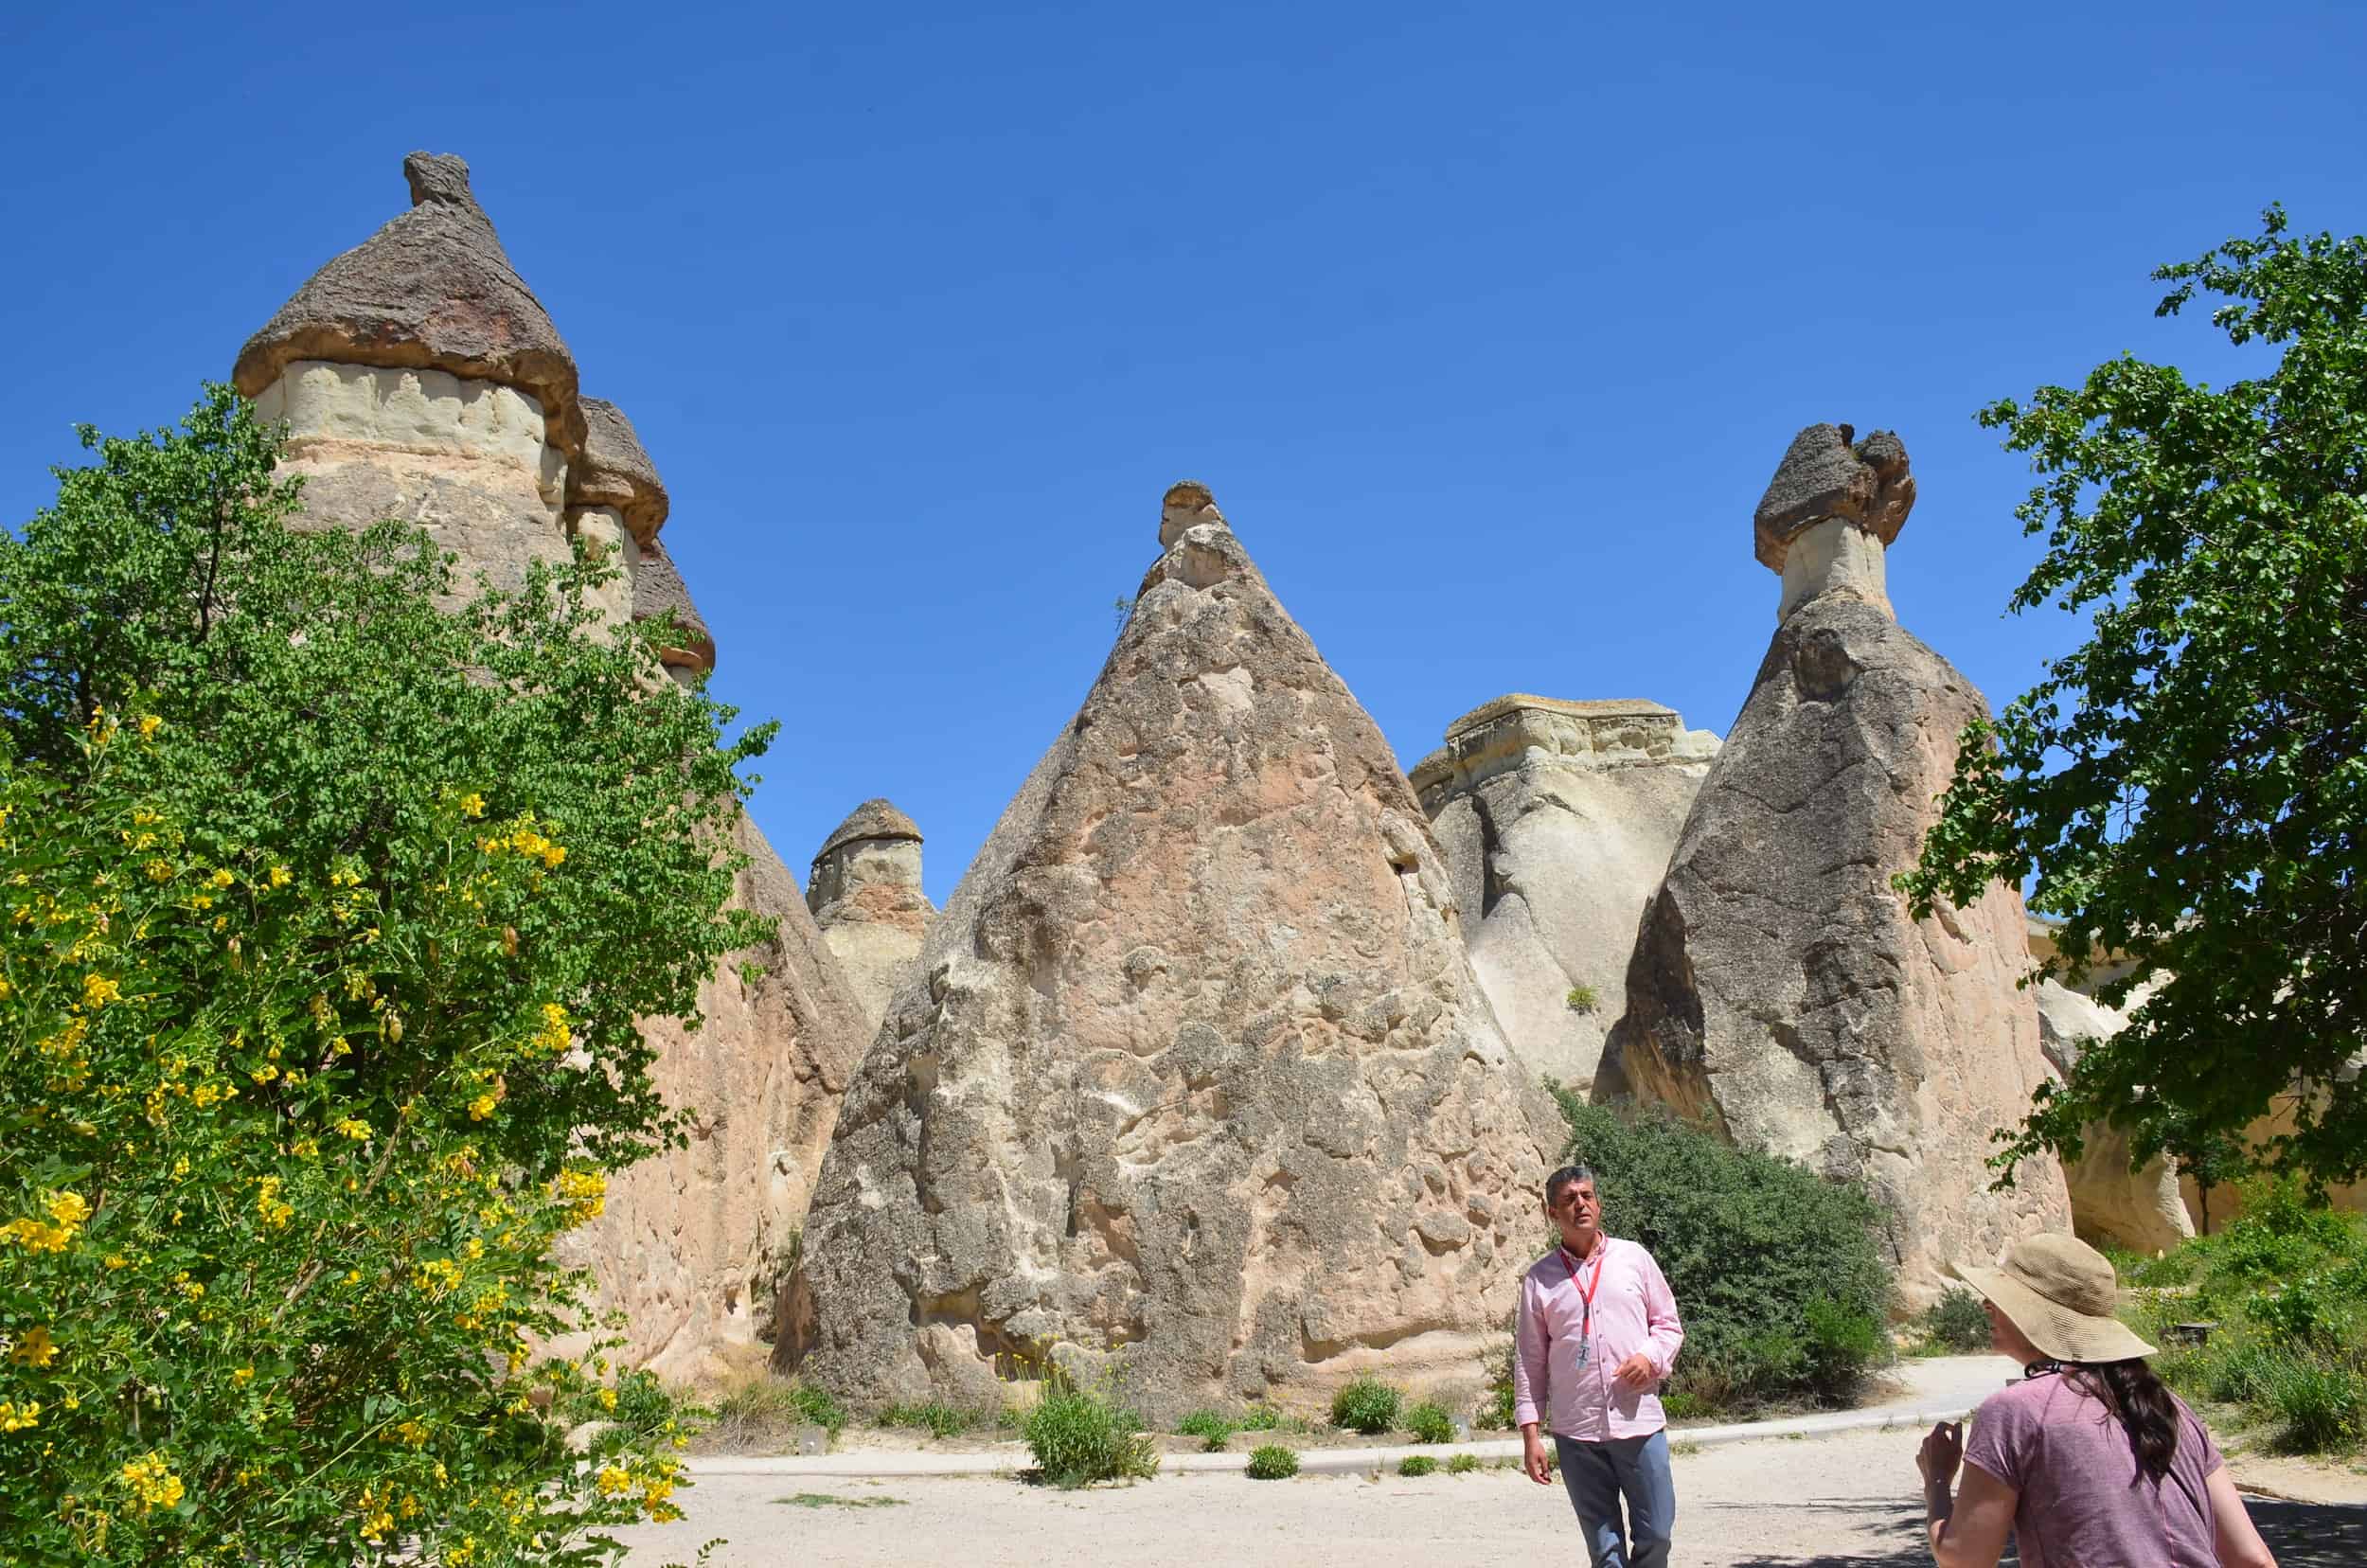 Paşabağ (Monk's Valley) in Cappadocia, Turkey